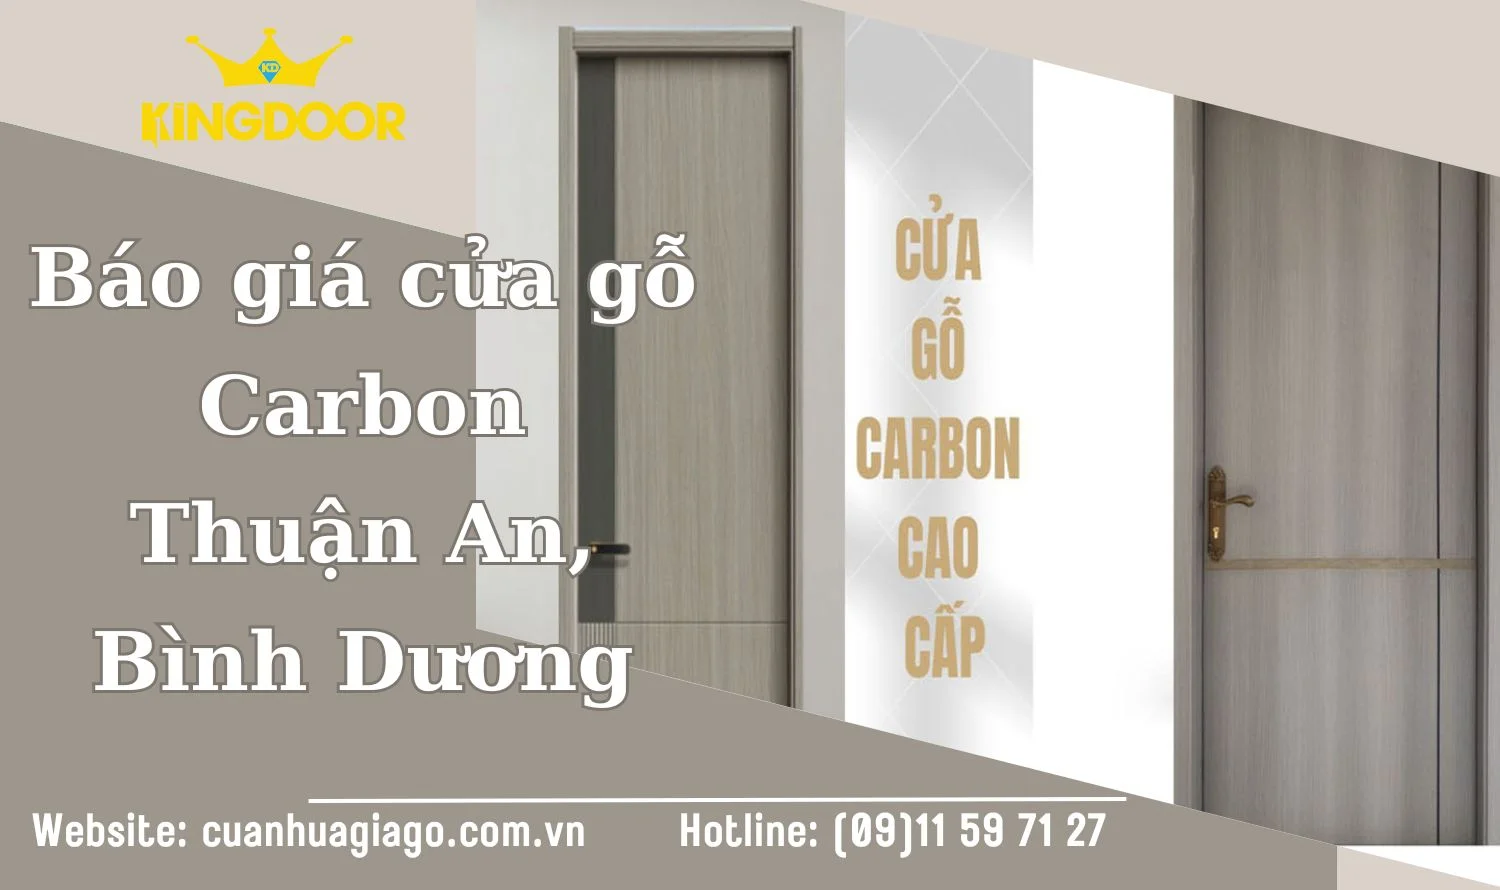 AVT-Bao-gia-cua-go-Carbon-tai-Thuan-An-Binh-Duong